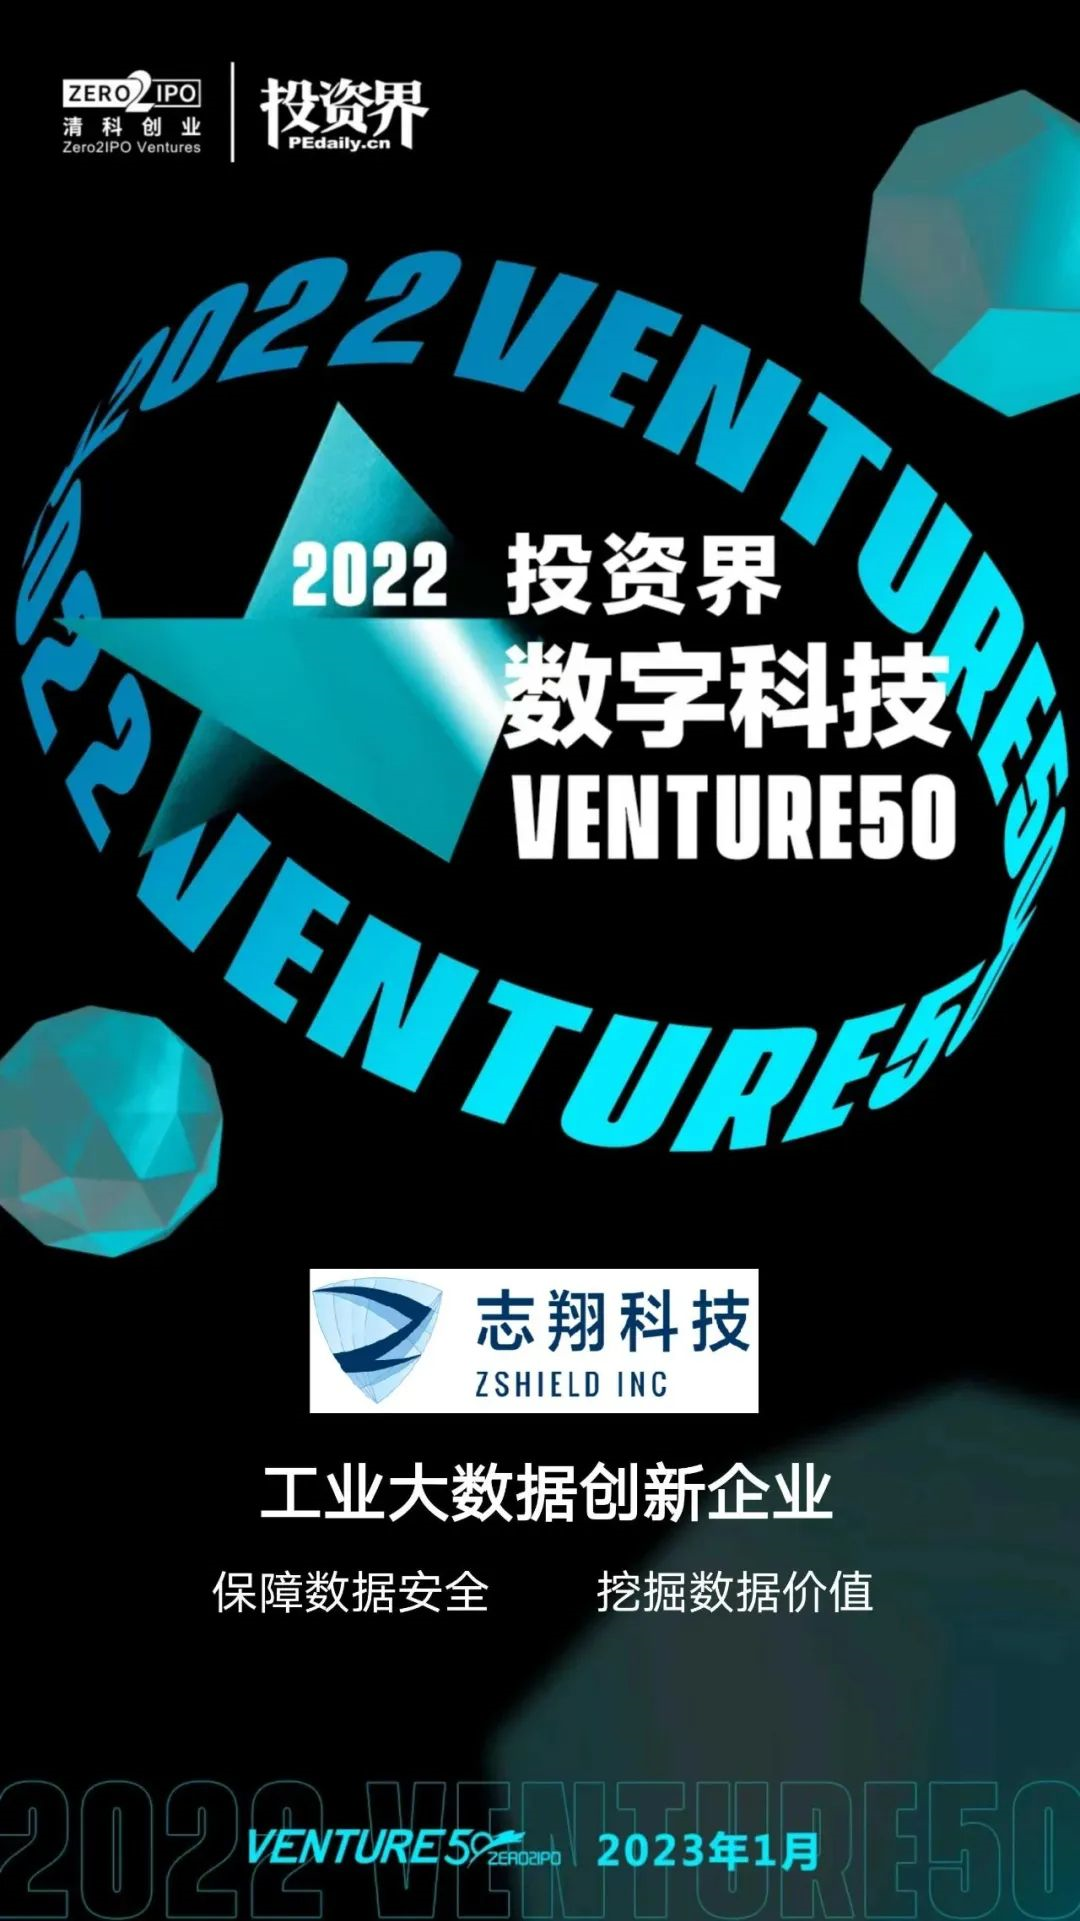 2022 Venture50